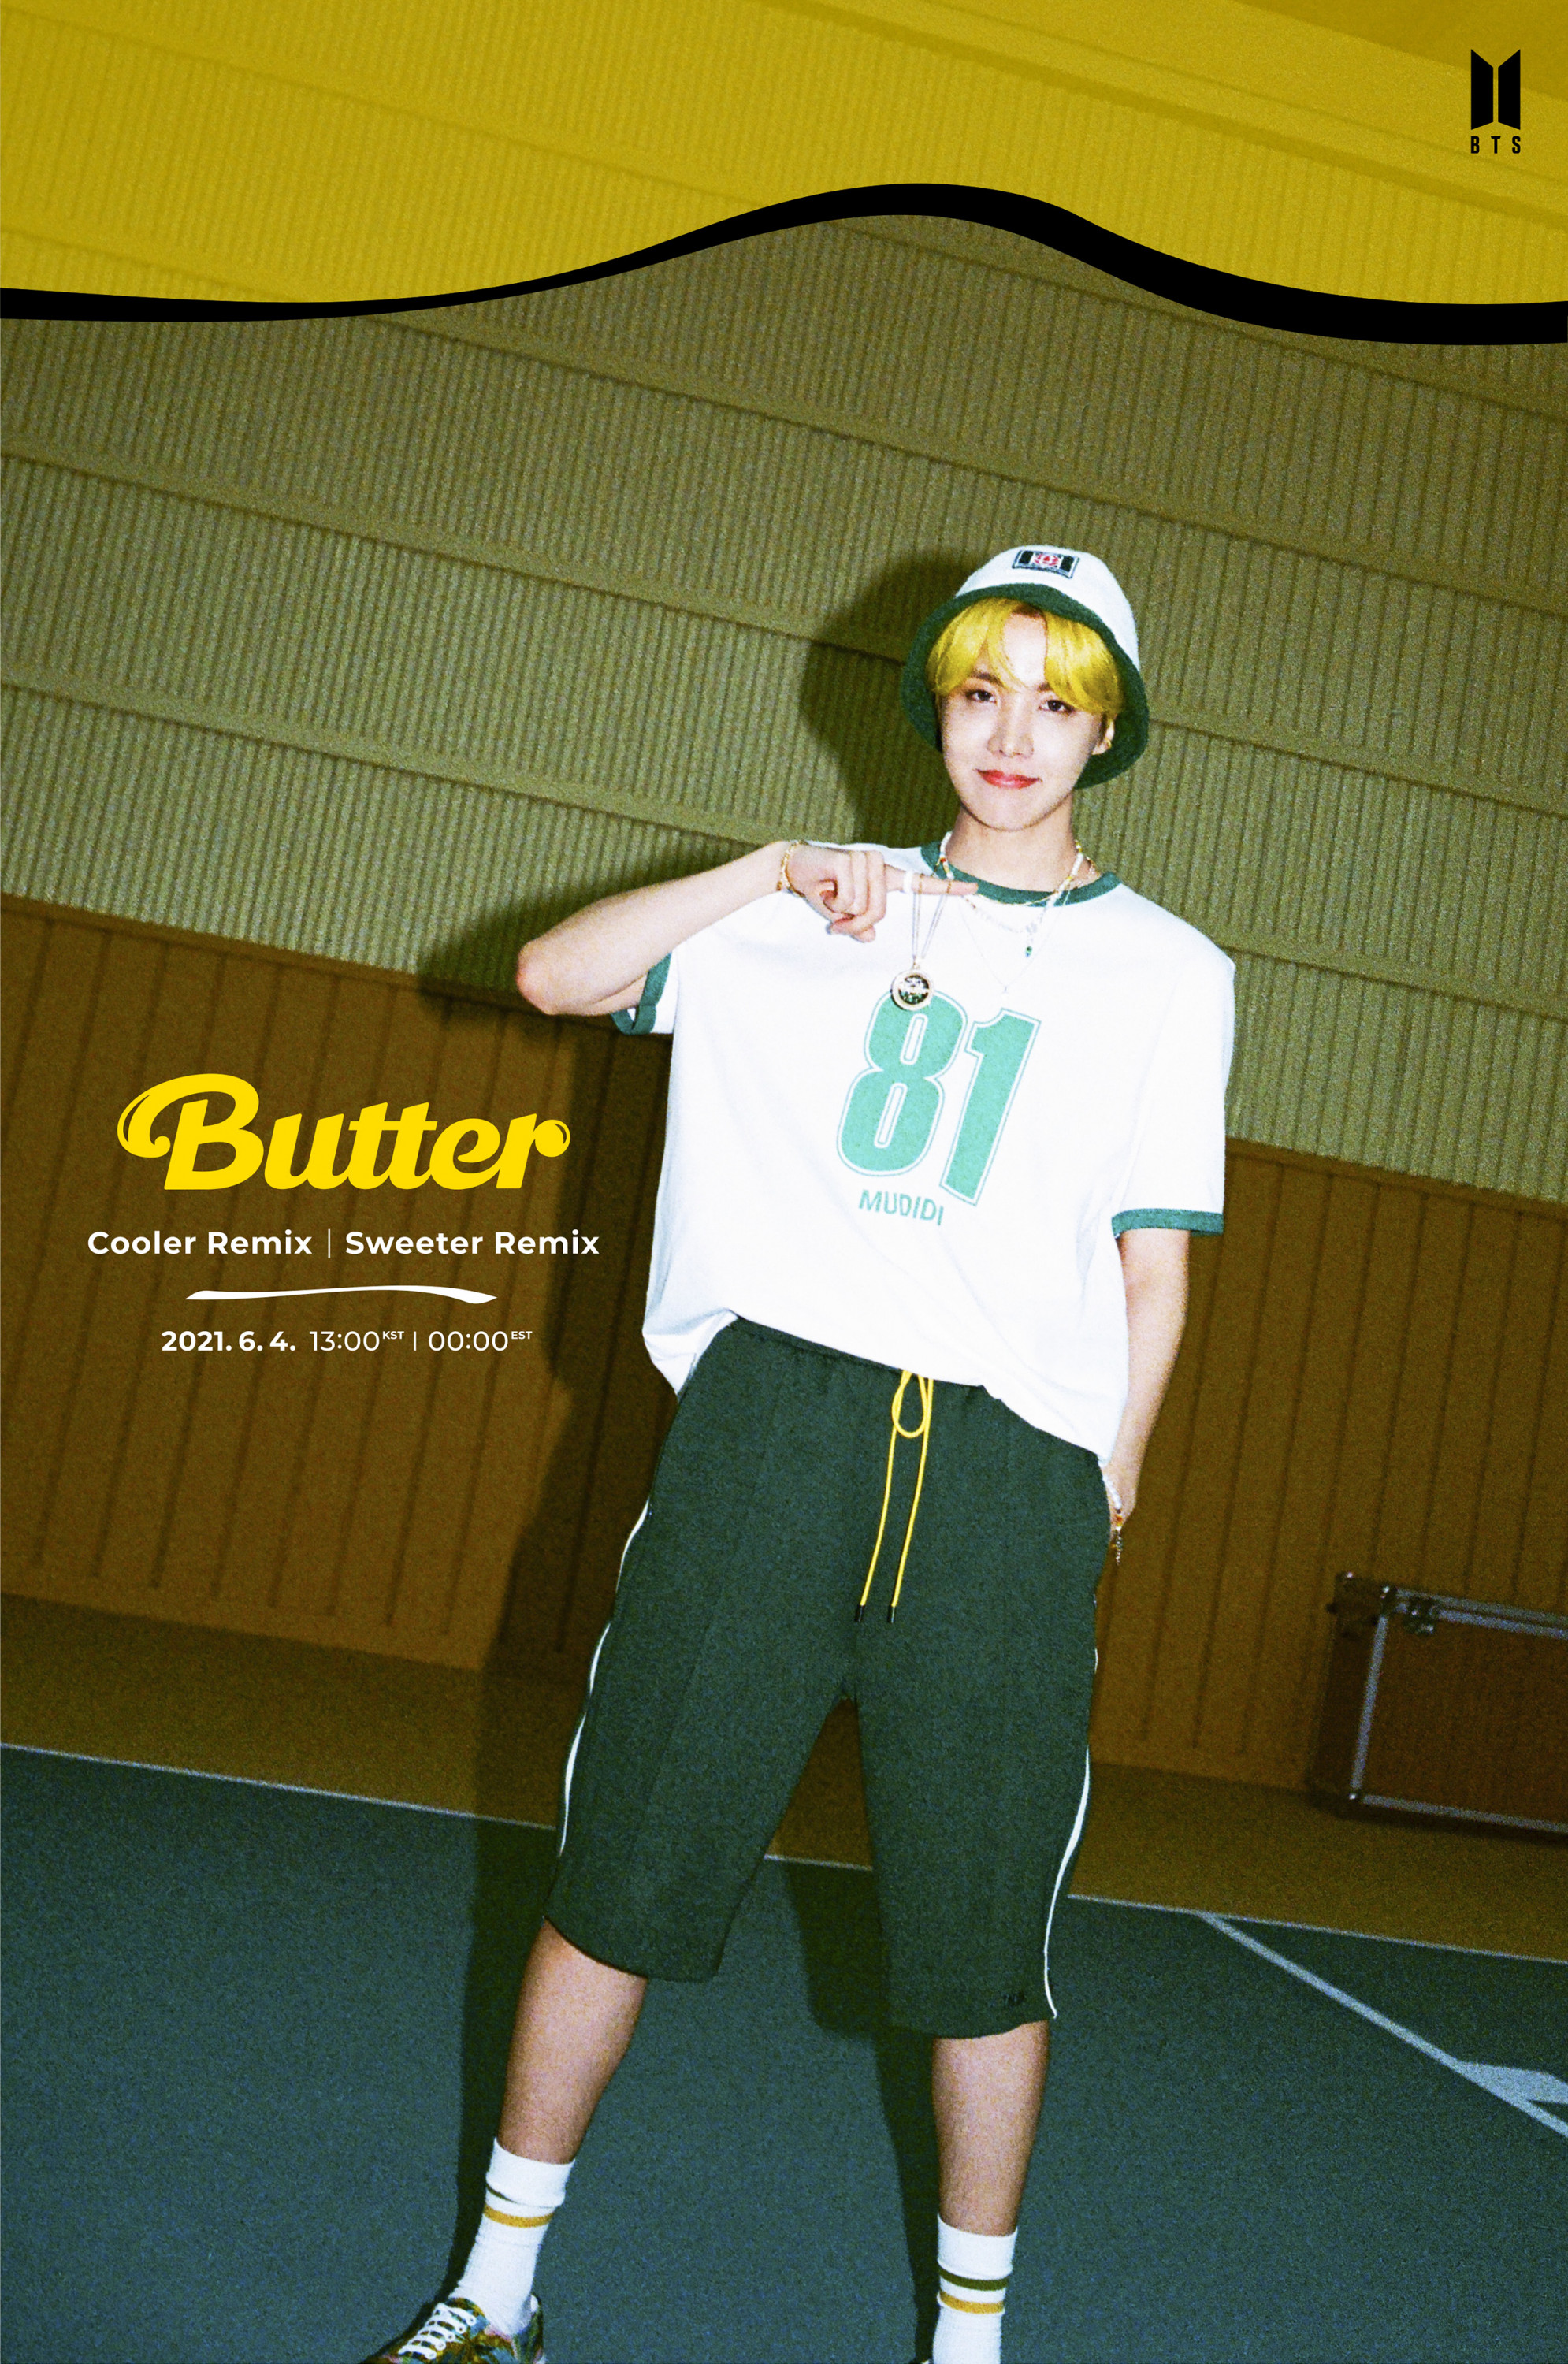 BTS Butter Remix (Sweeter / Cooler Version) Teaser Photos - J-hope